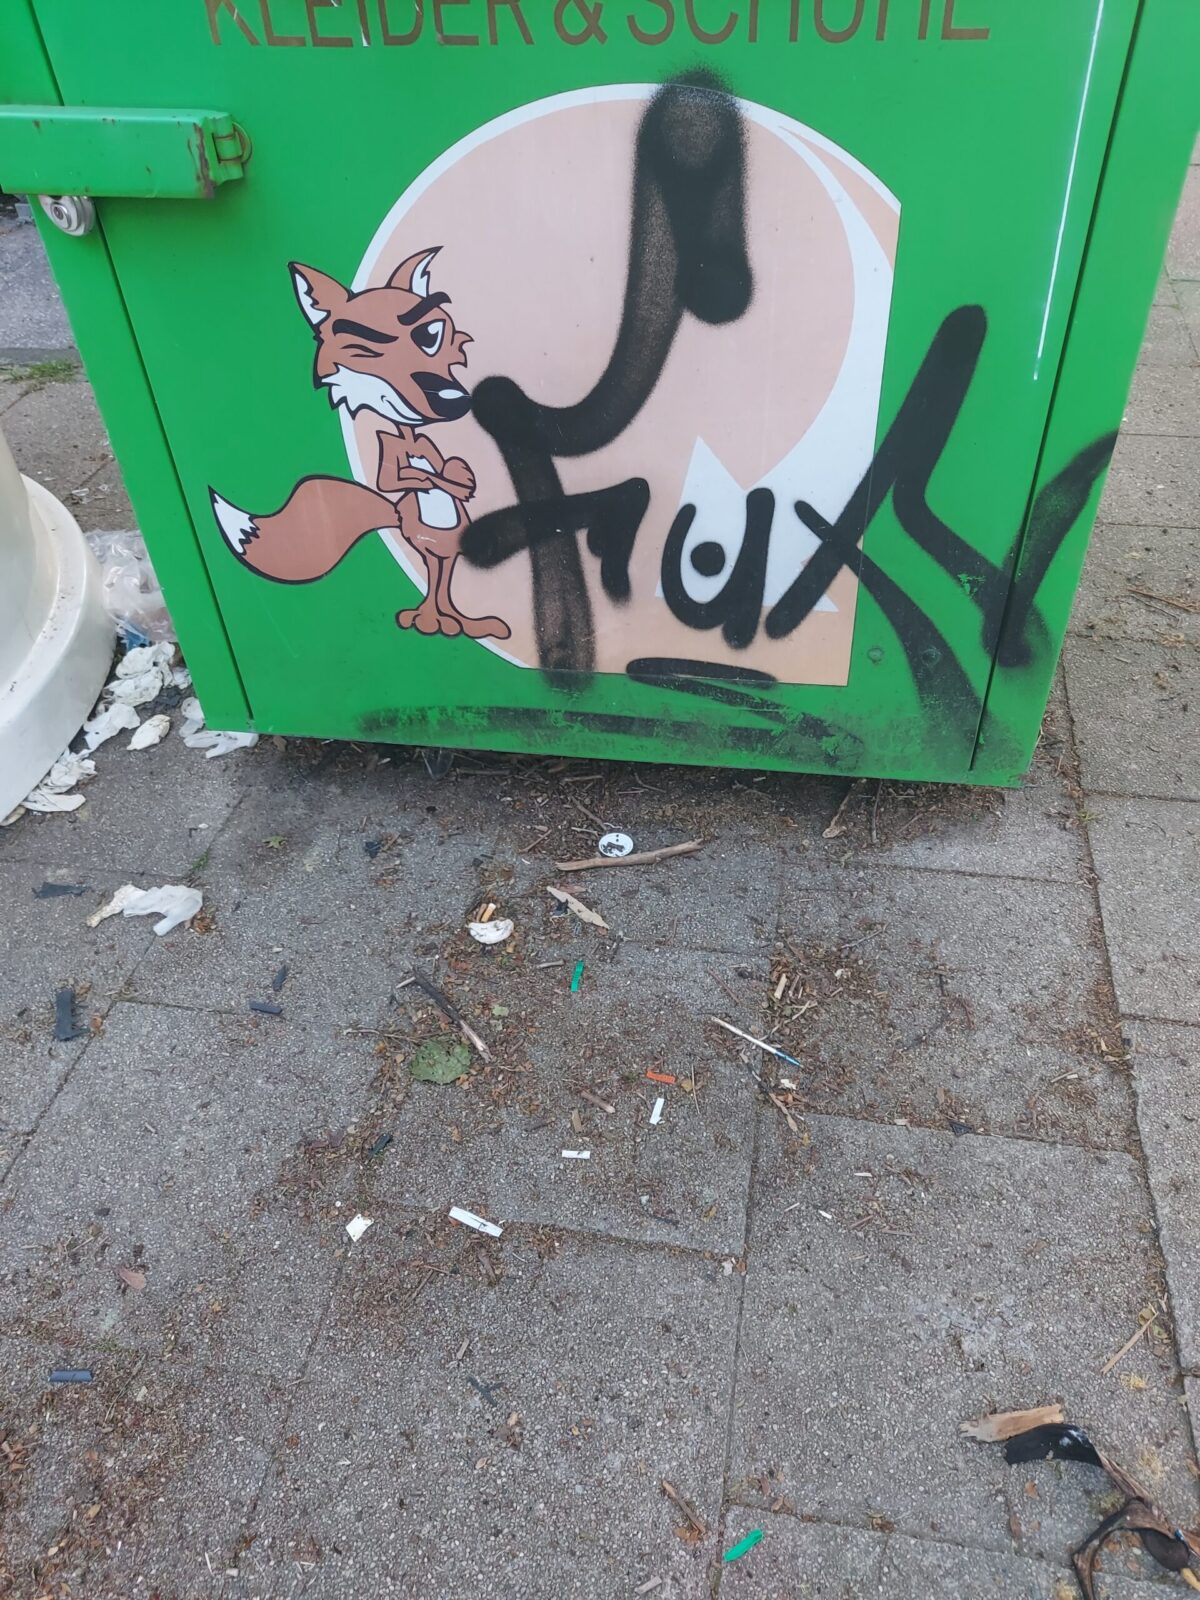 Beispiel-Foto zum Thema #cityzoo. Zu sehen ist ein grüner Kleider-Container, davor eine Comiczeichnung eines Fuchses, der zwinkert und beide Arme verschränkt hat, außerdem ein aufgesprühtes tag, es ist der Schriftzug Fuxy 